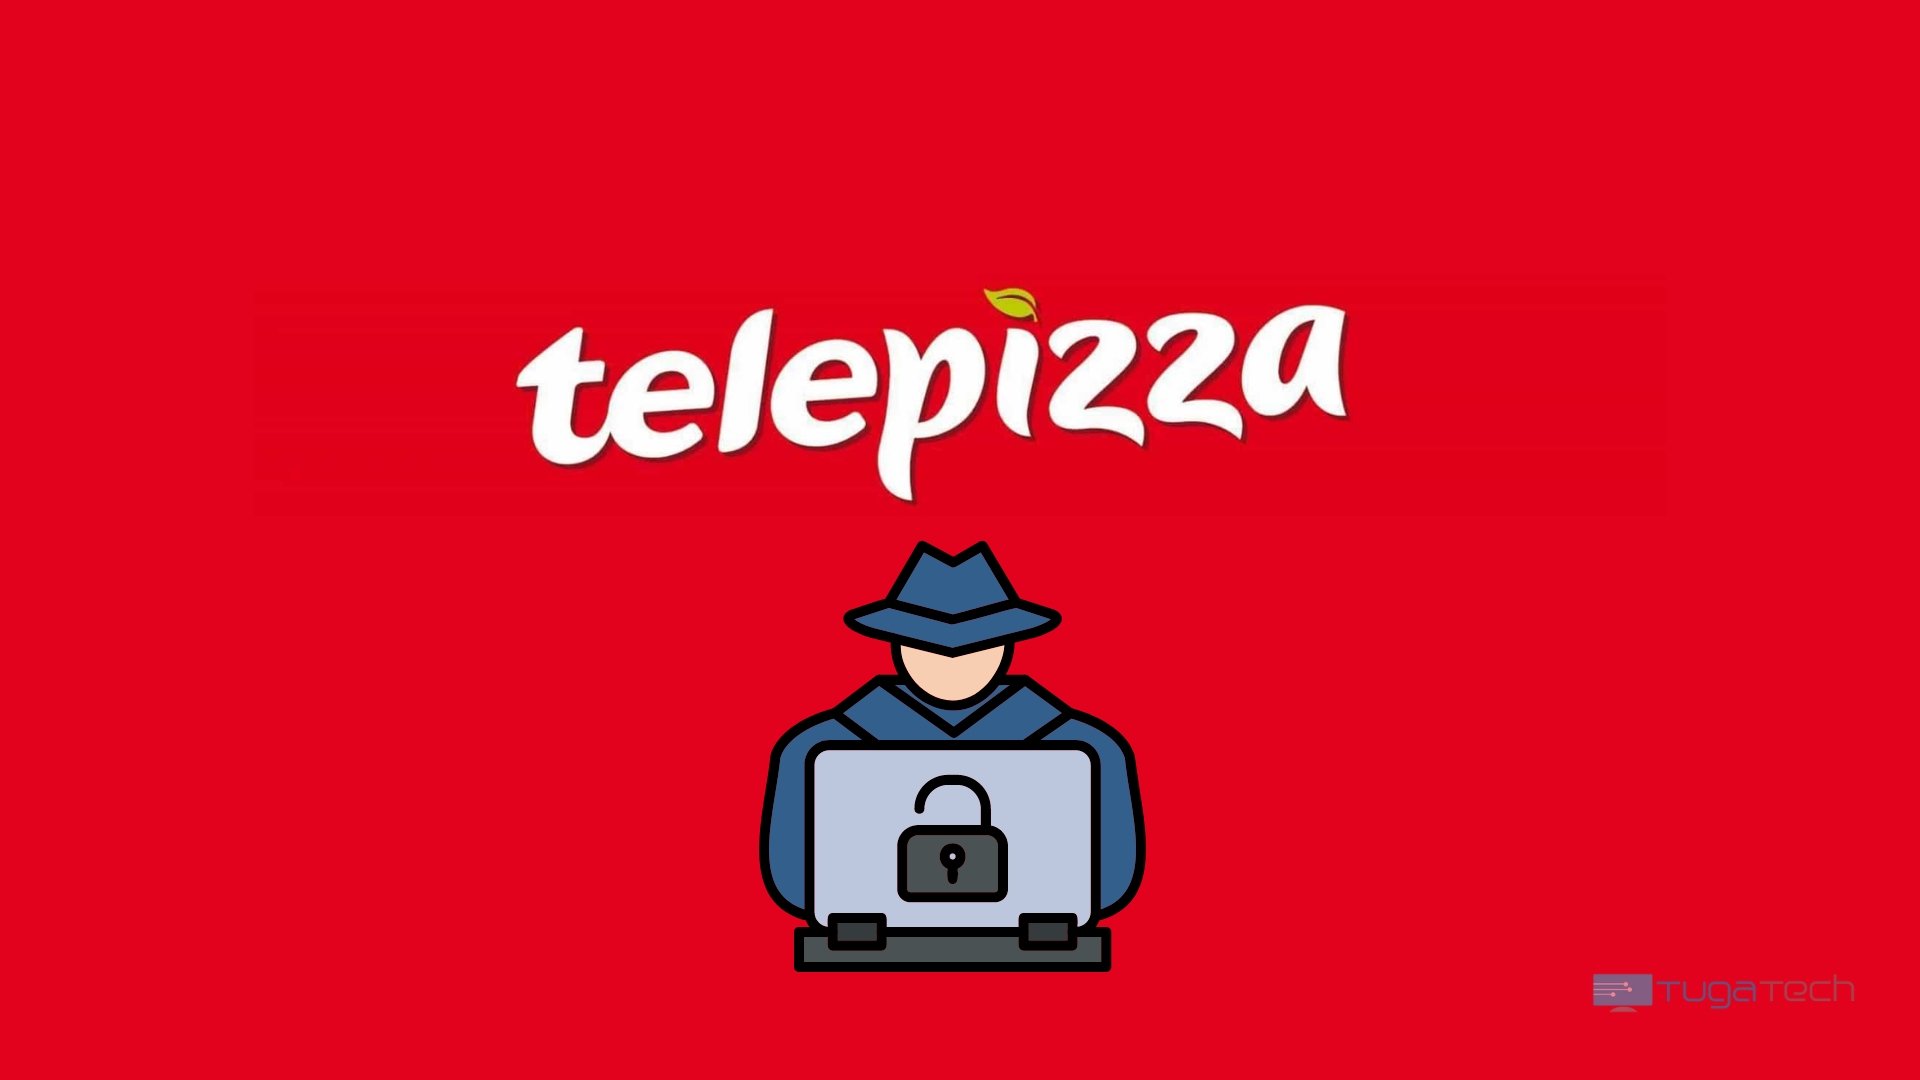 Telepizza logo com hacker em ataque ransomware